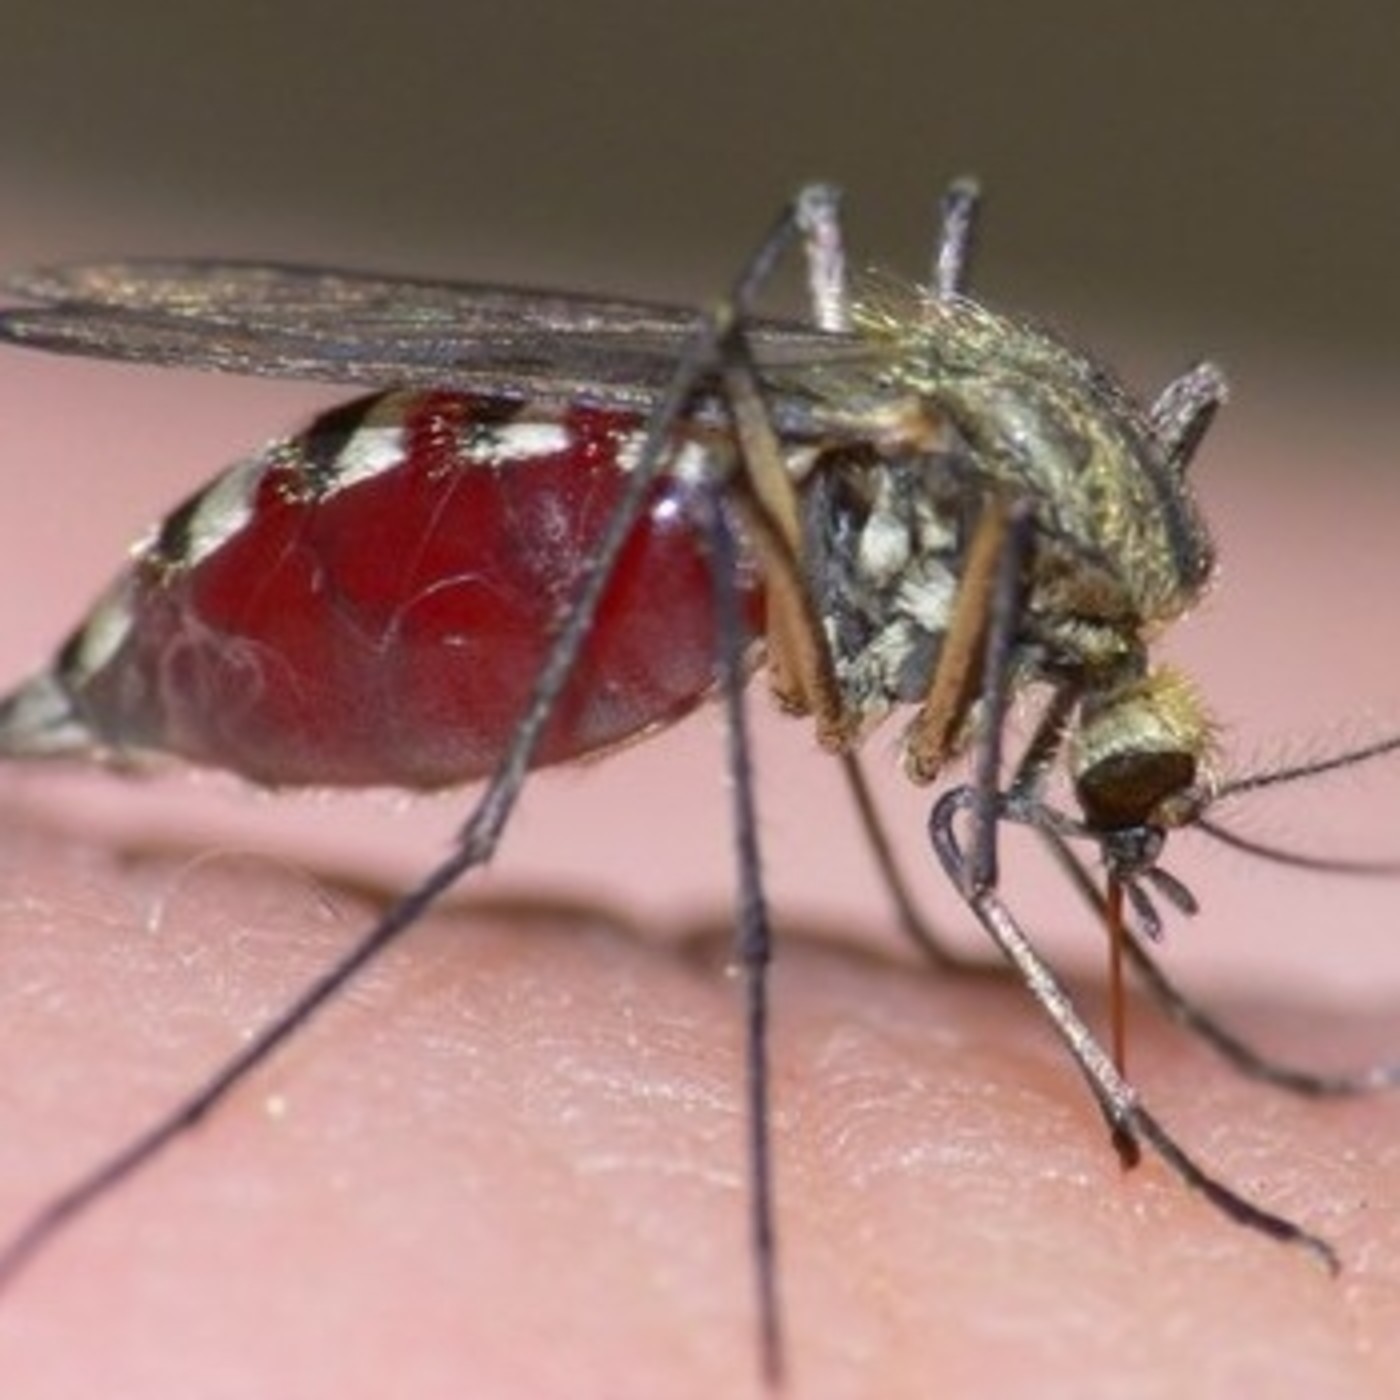 Укус малярийного комара и его последствия для человека